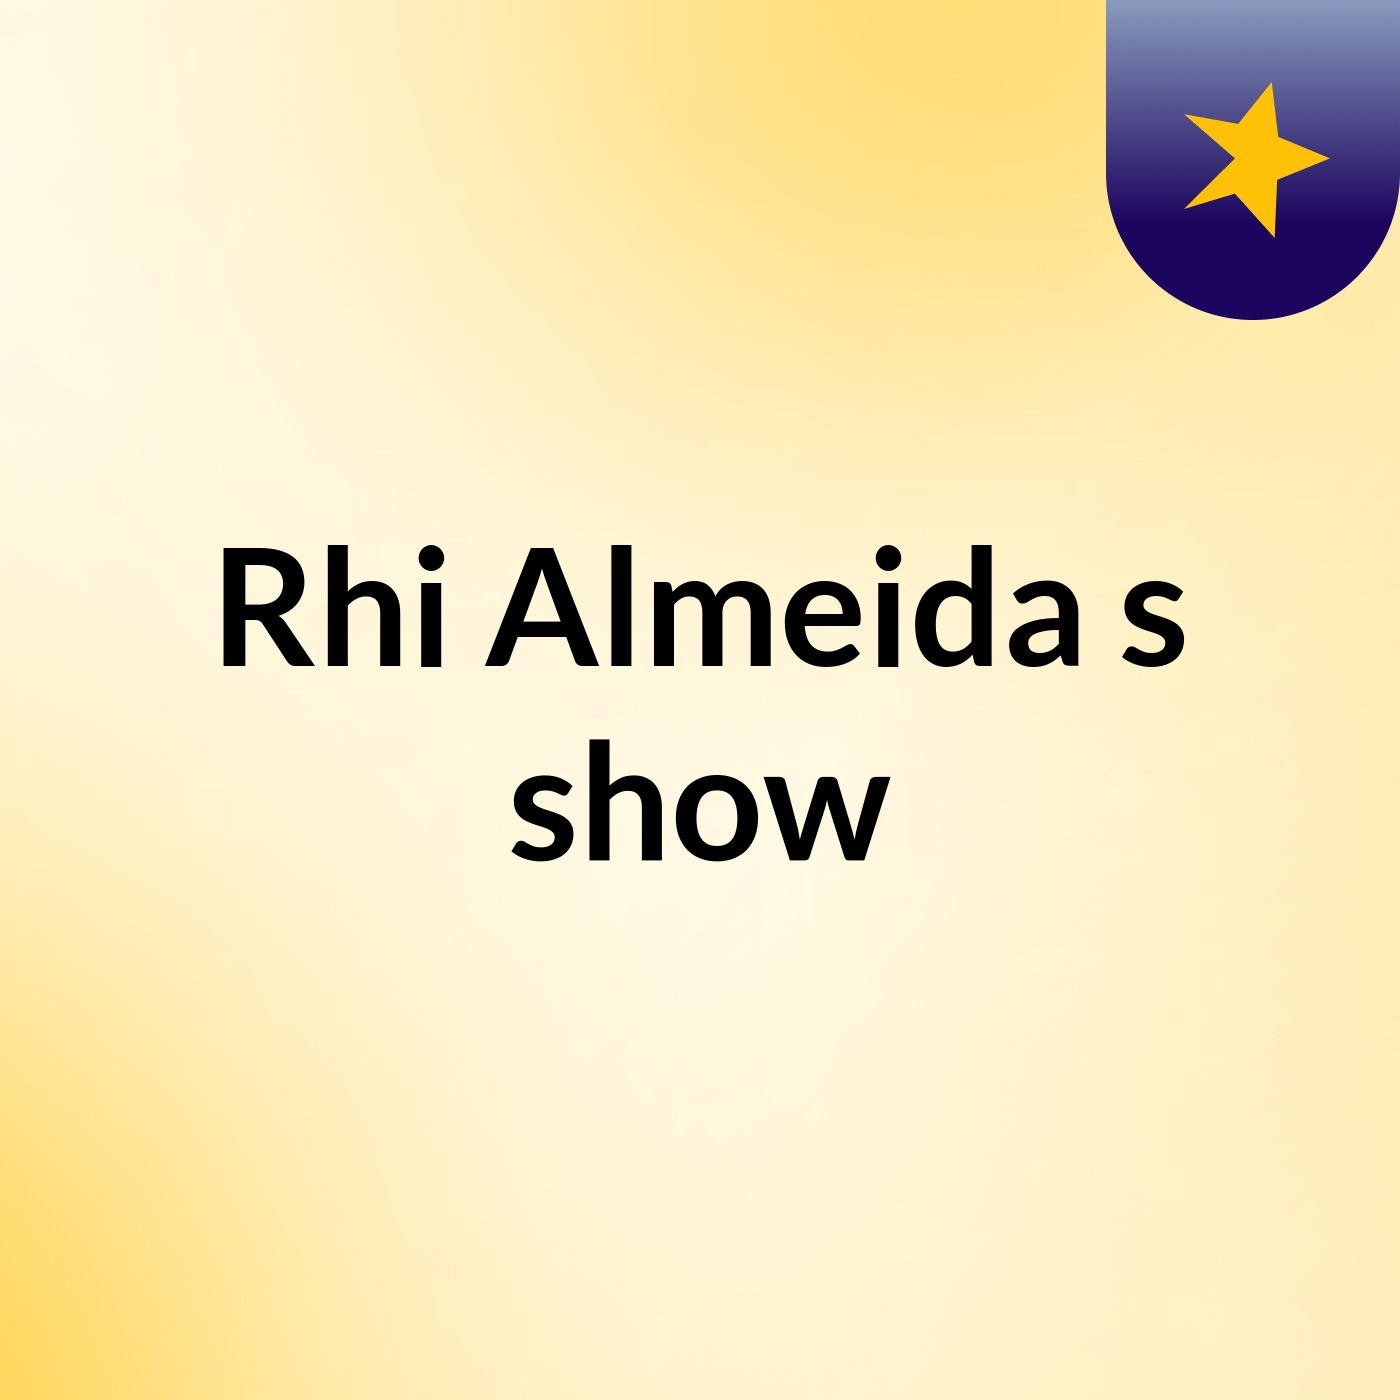 Rhi Almeida's show